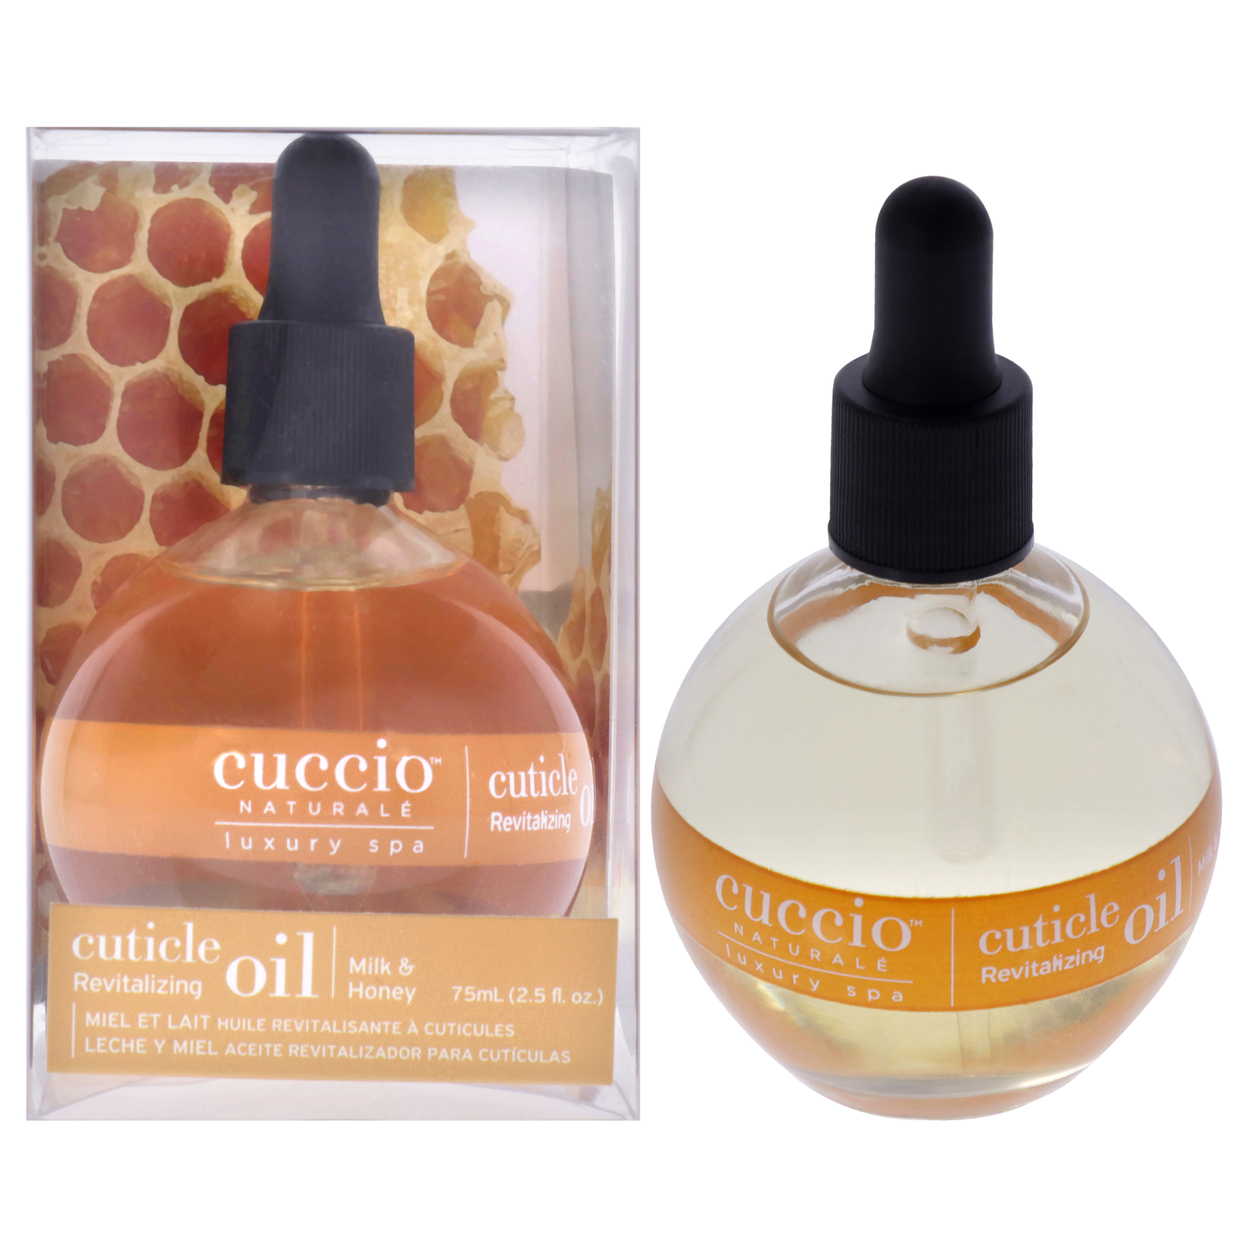 Cuccio Naturale Cuticle Revitalizing Oil - Milk And Honey Manicure 2.5 Oz